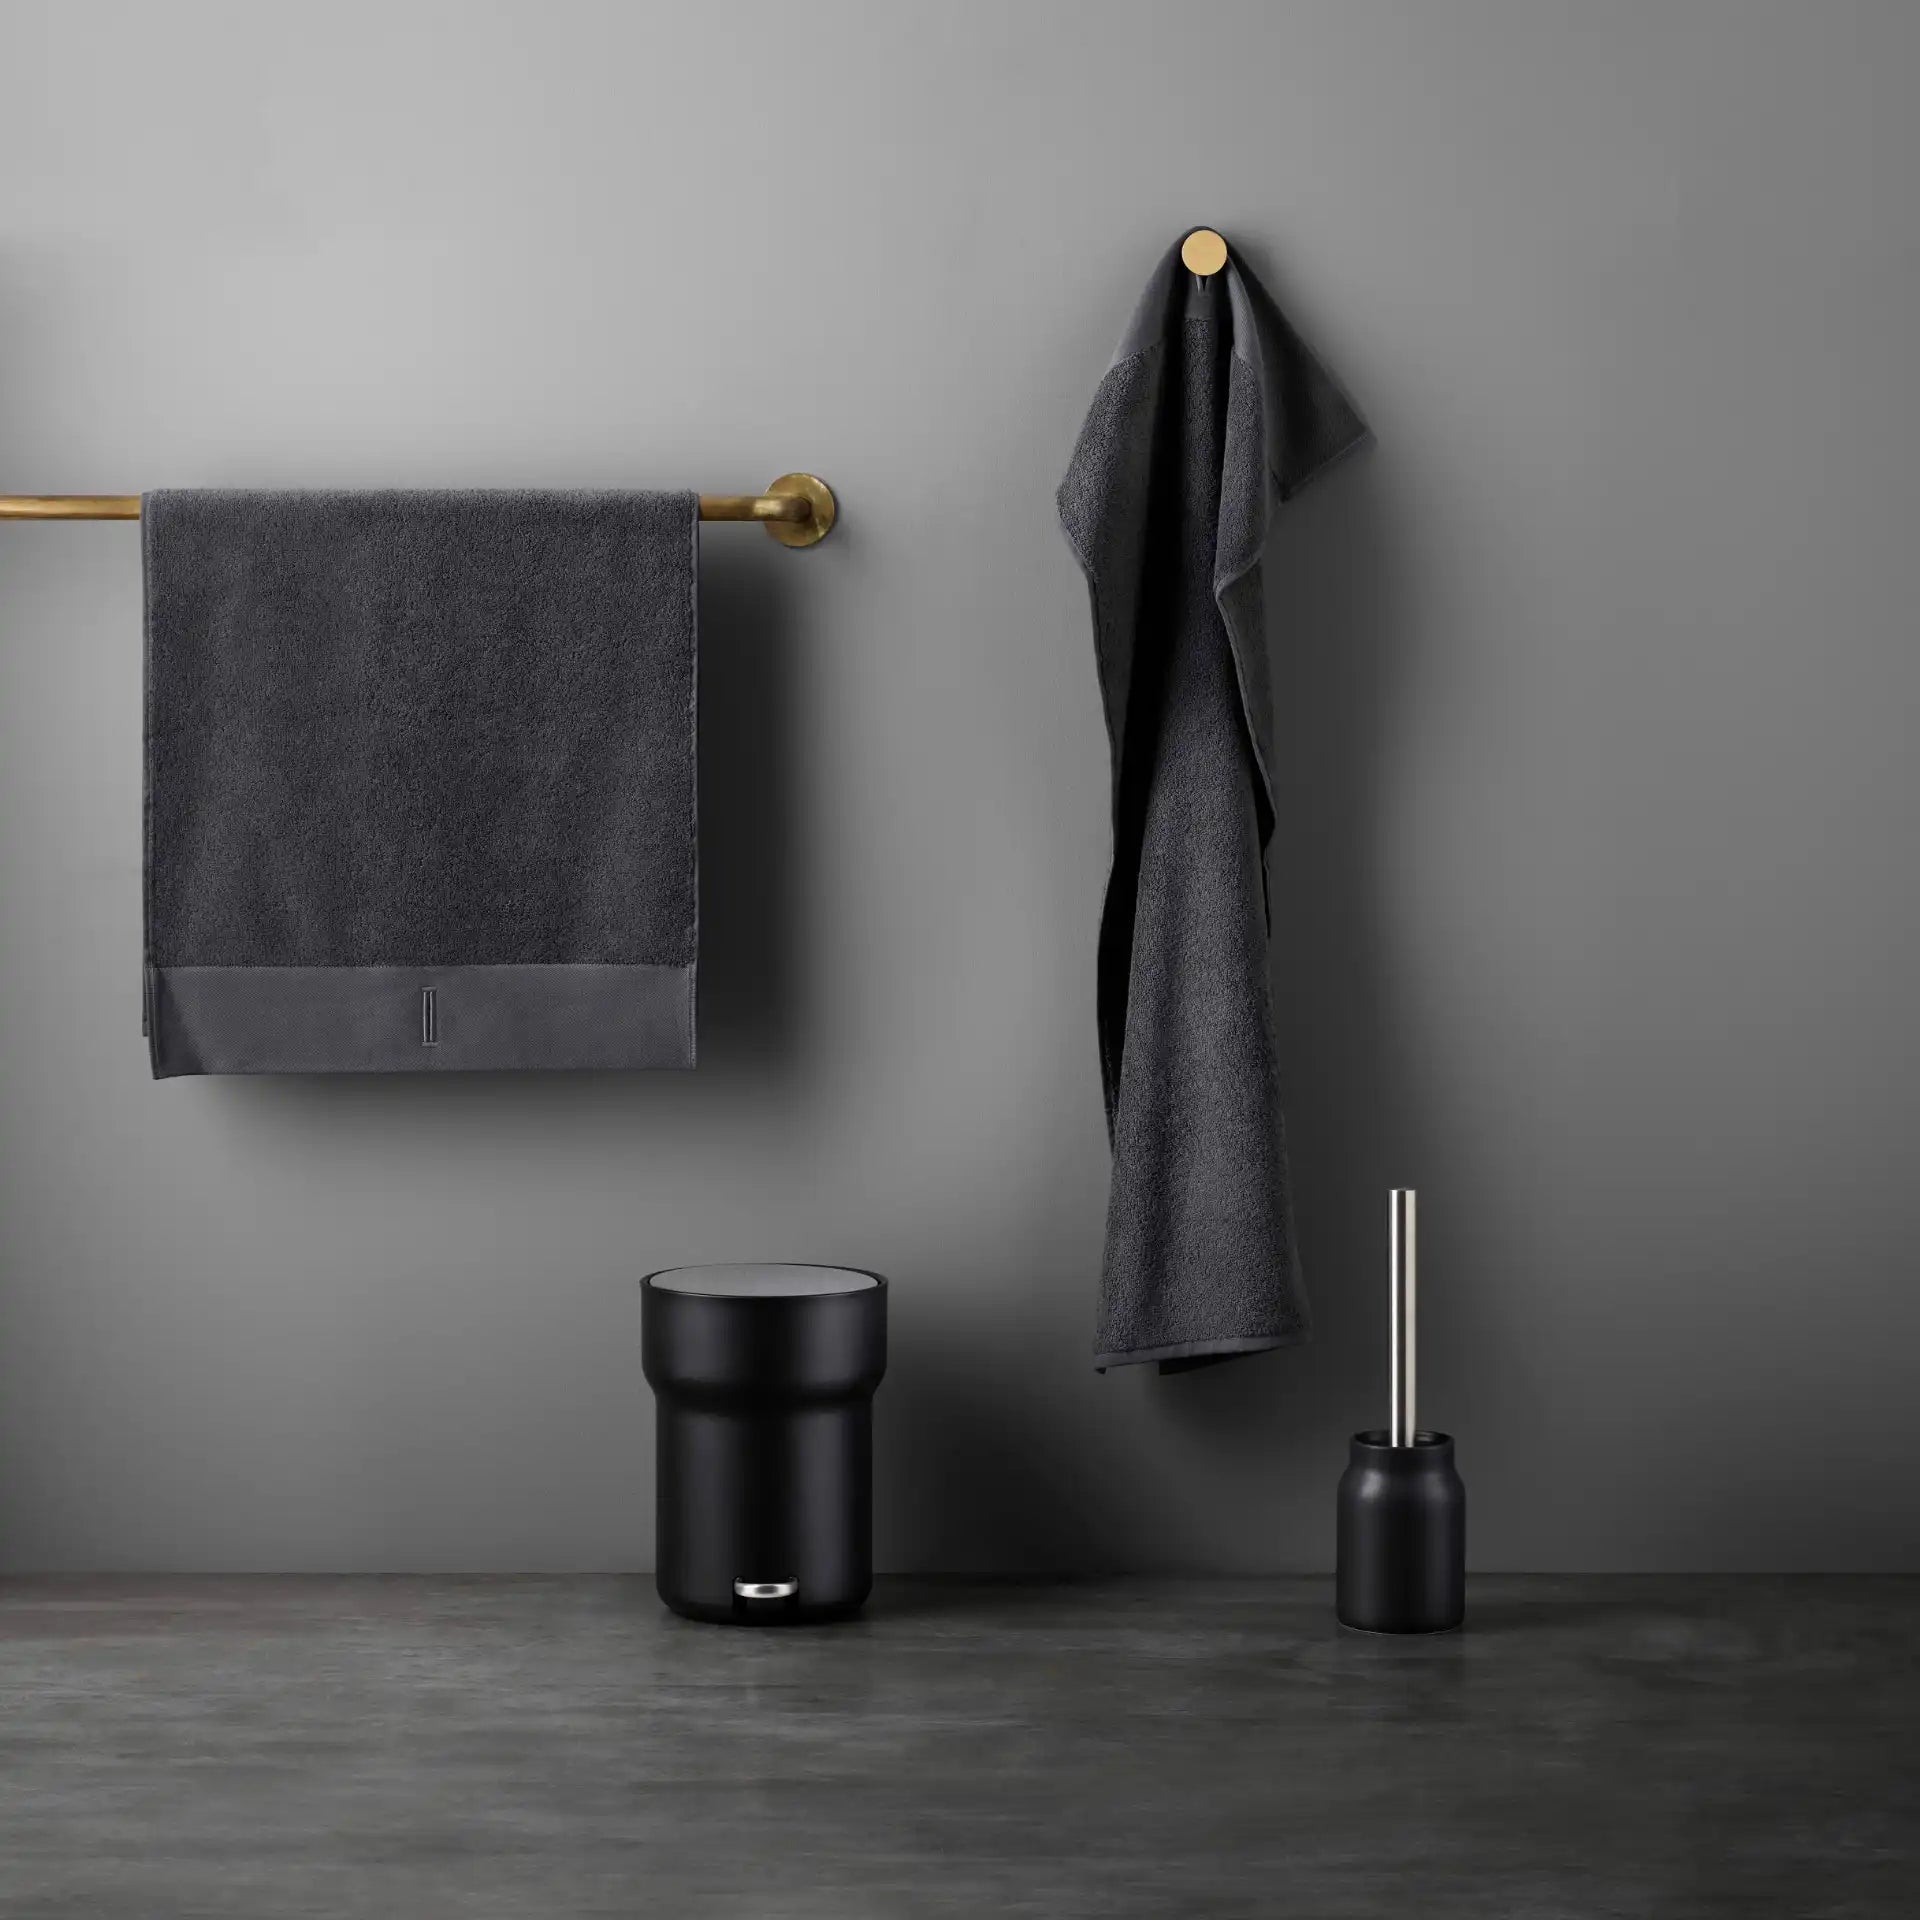 Eva Solo Ceramic Toilet Brush Matt Black | Panik Design